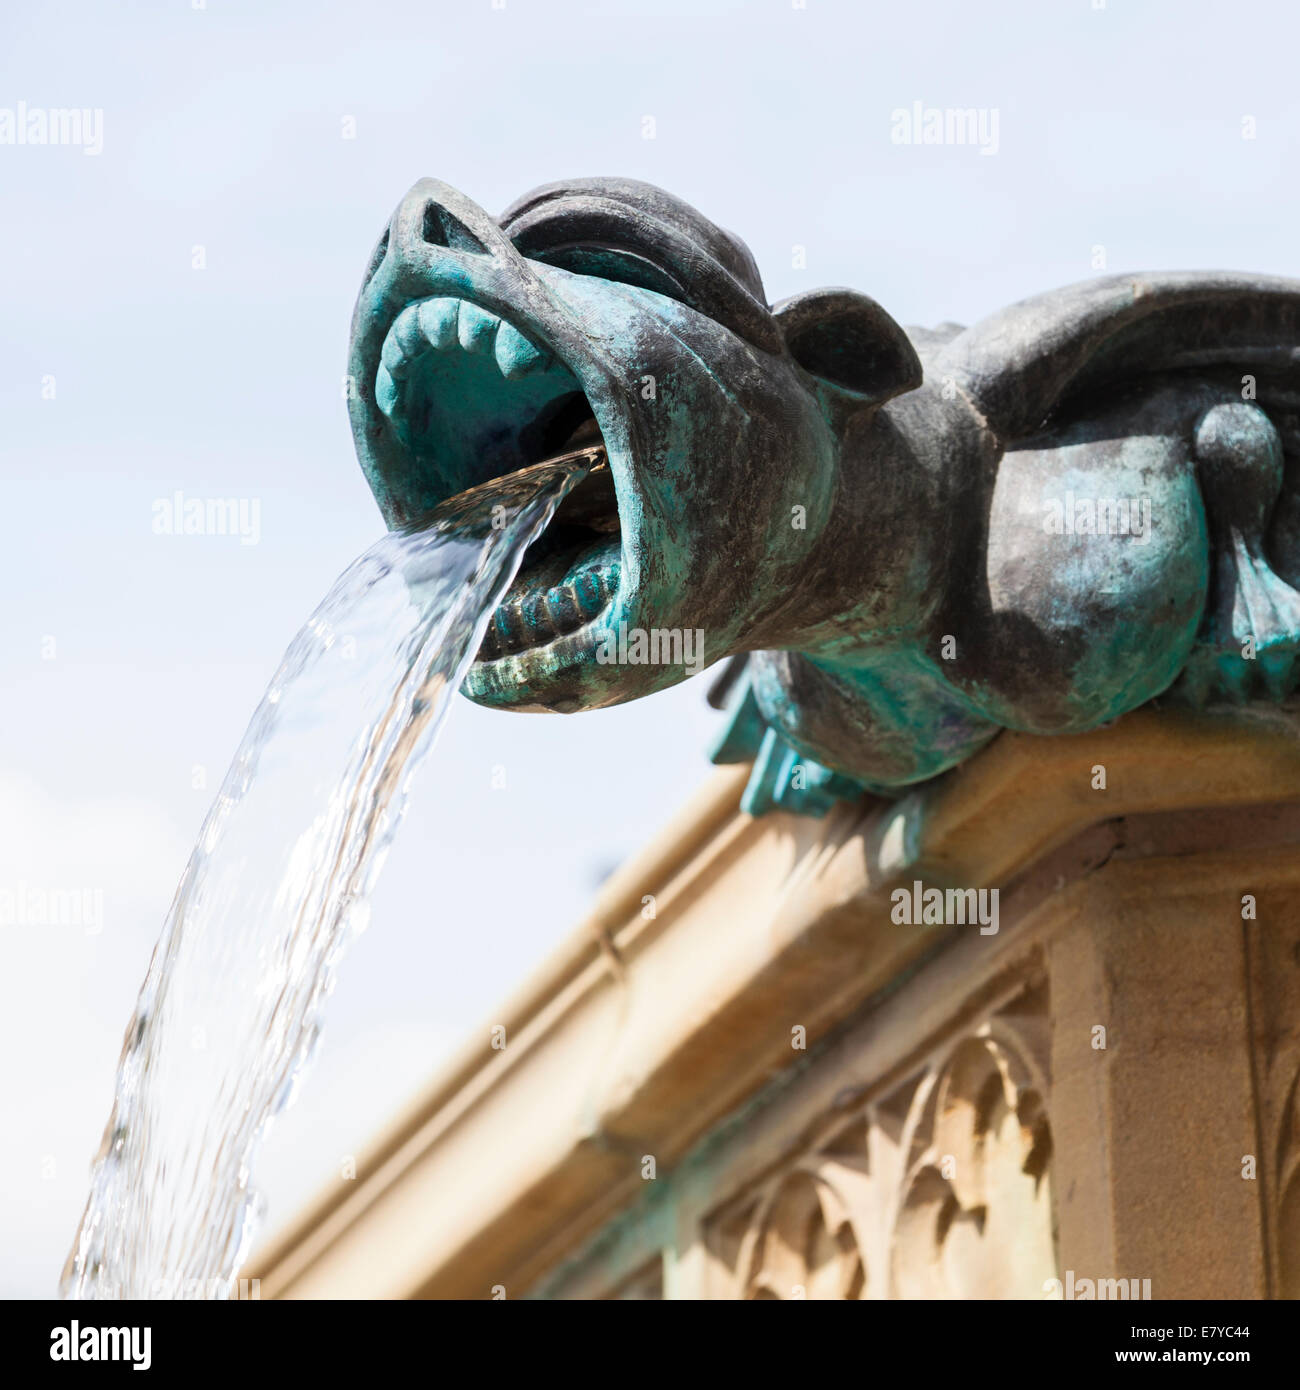 Gargoyle, cours d'eau de sa bouche, dans le cadre d'une fontaine dans Albert Square, Manchester, Angleterre, RU Banque D'Images